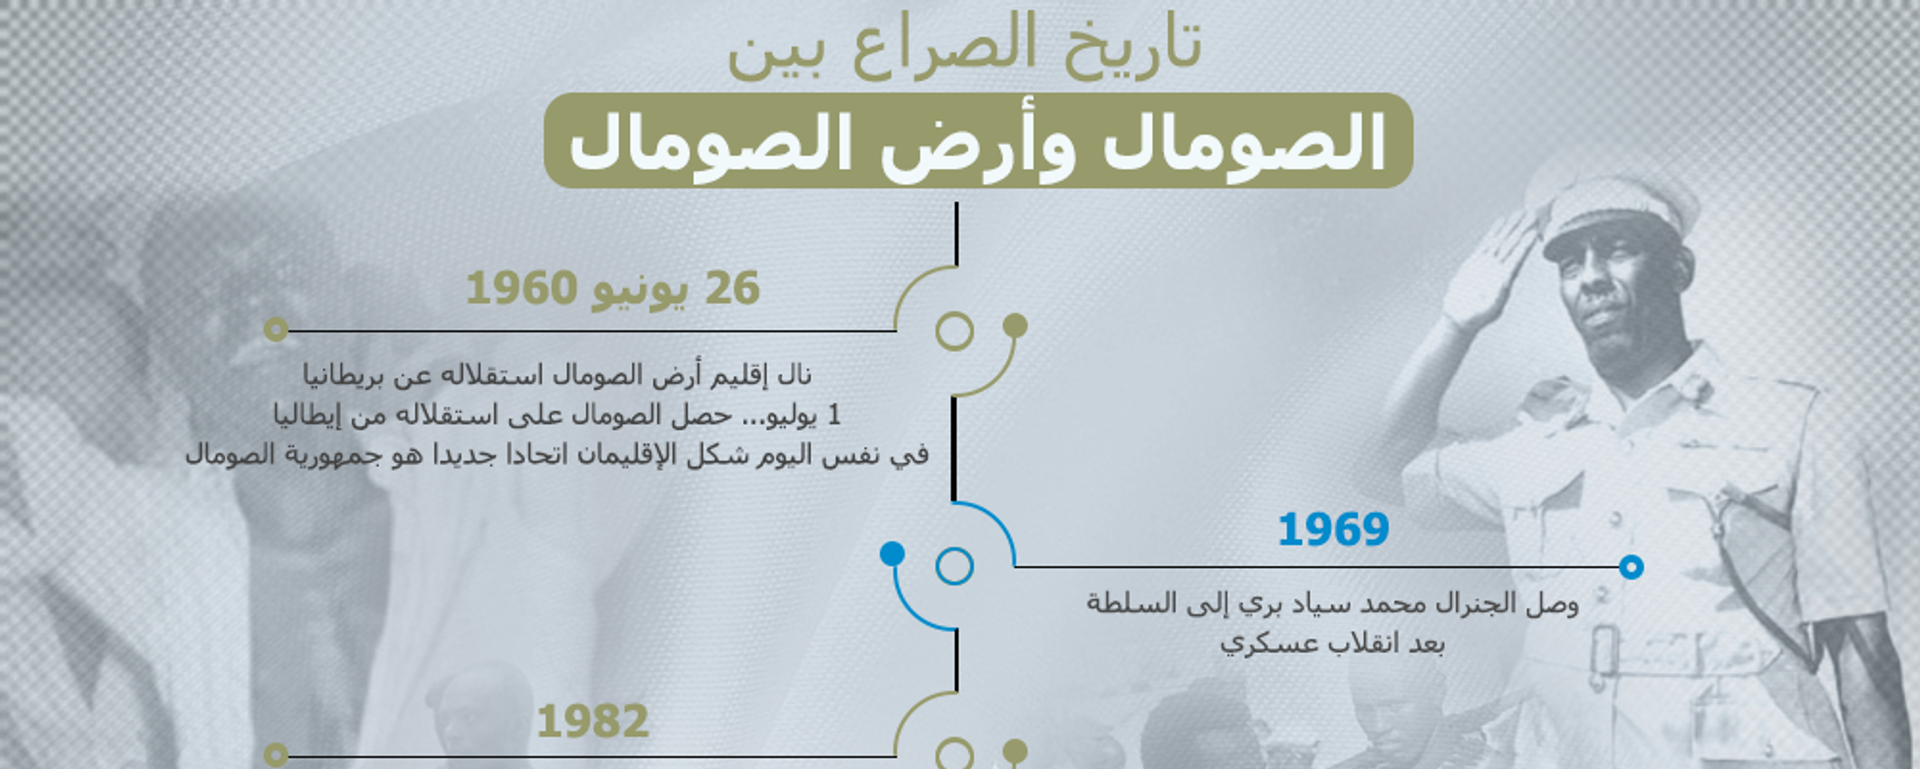 13 معلومة عن تاريخ الصراع بين الصومال وأرض الصومال - سبوتنيك عربي, 1920, 22.06.2020